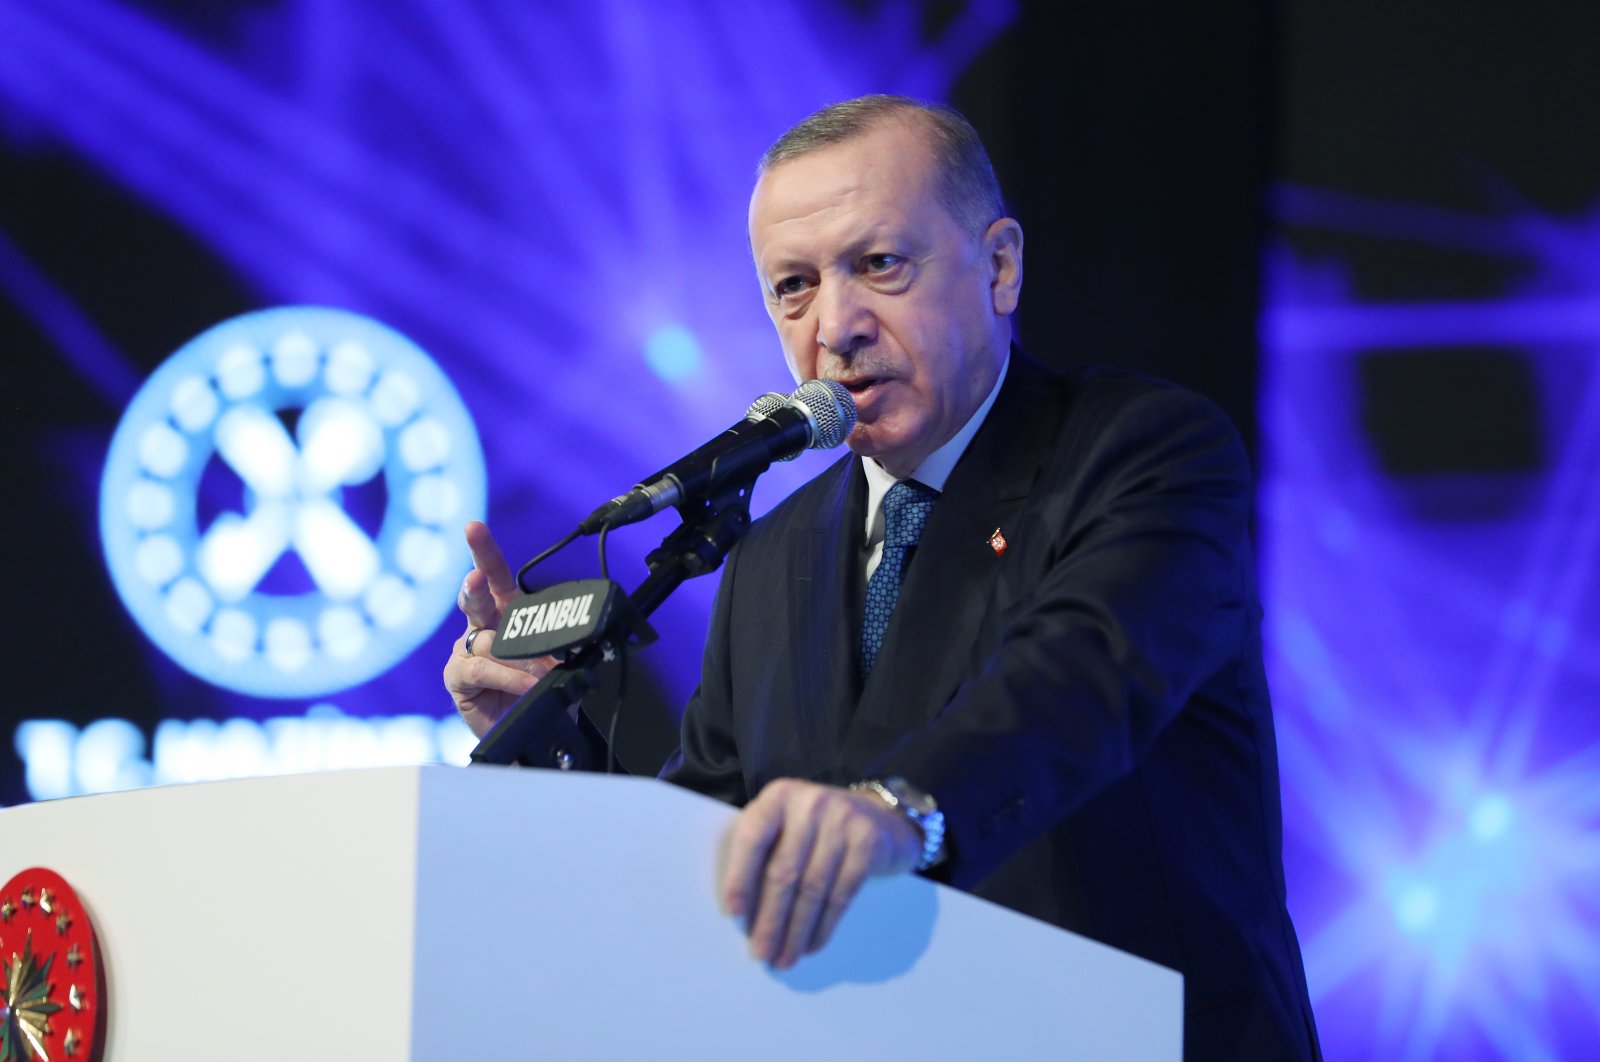 Cumhurbaşkanı Erdoğan 'Ekonomi Reform Paketi'ni açıkladı